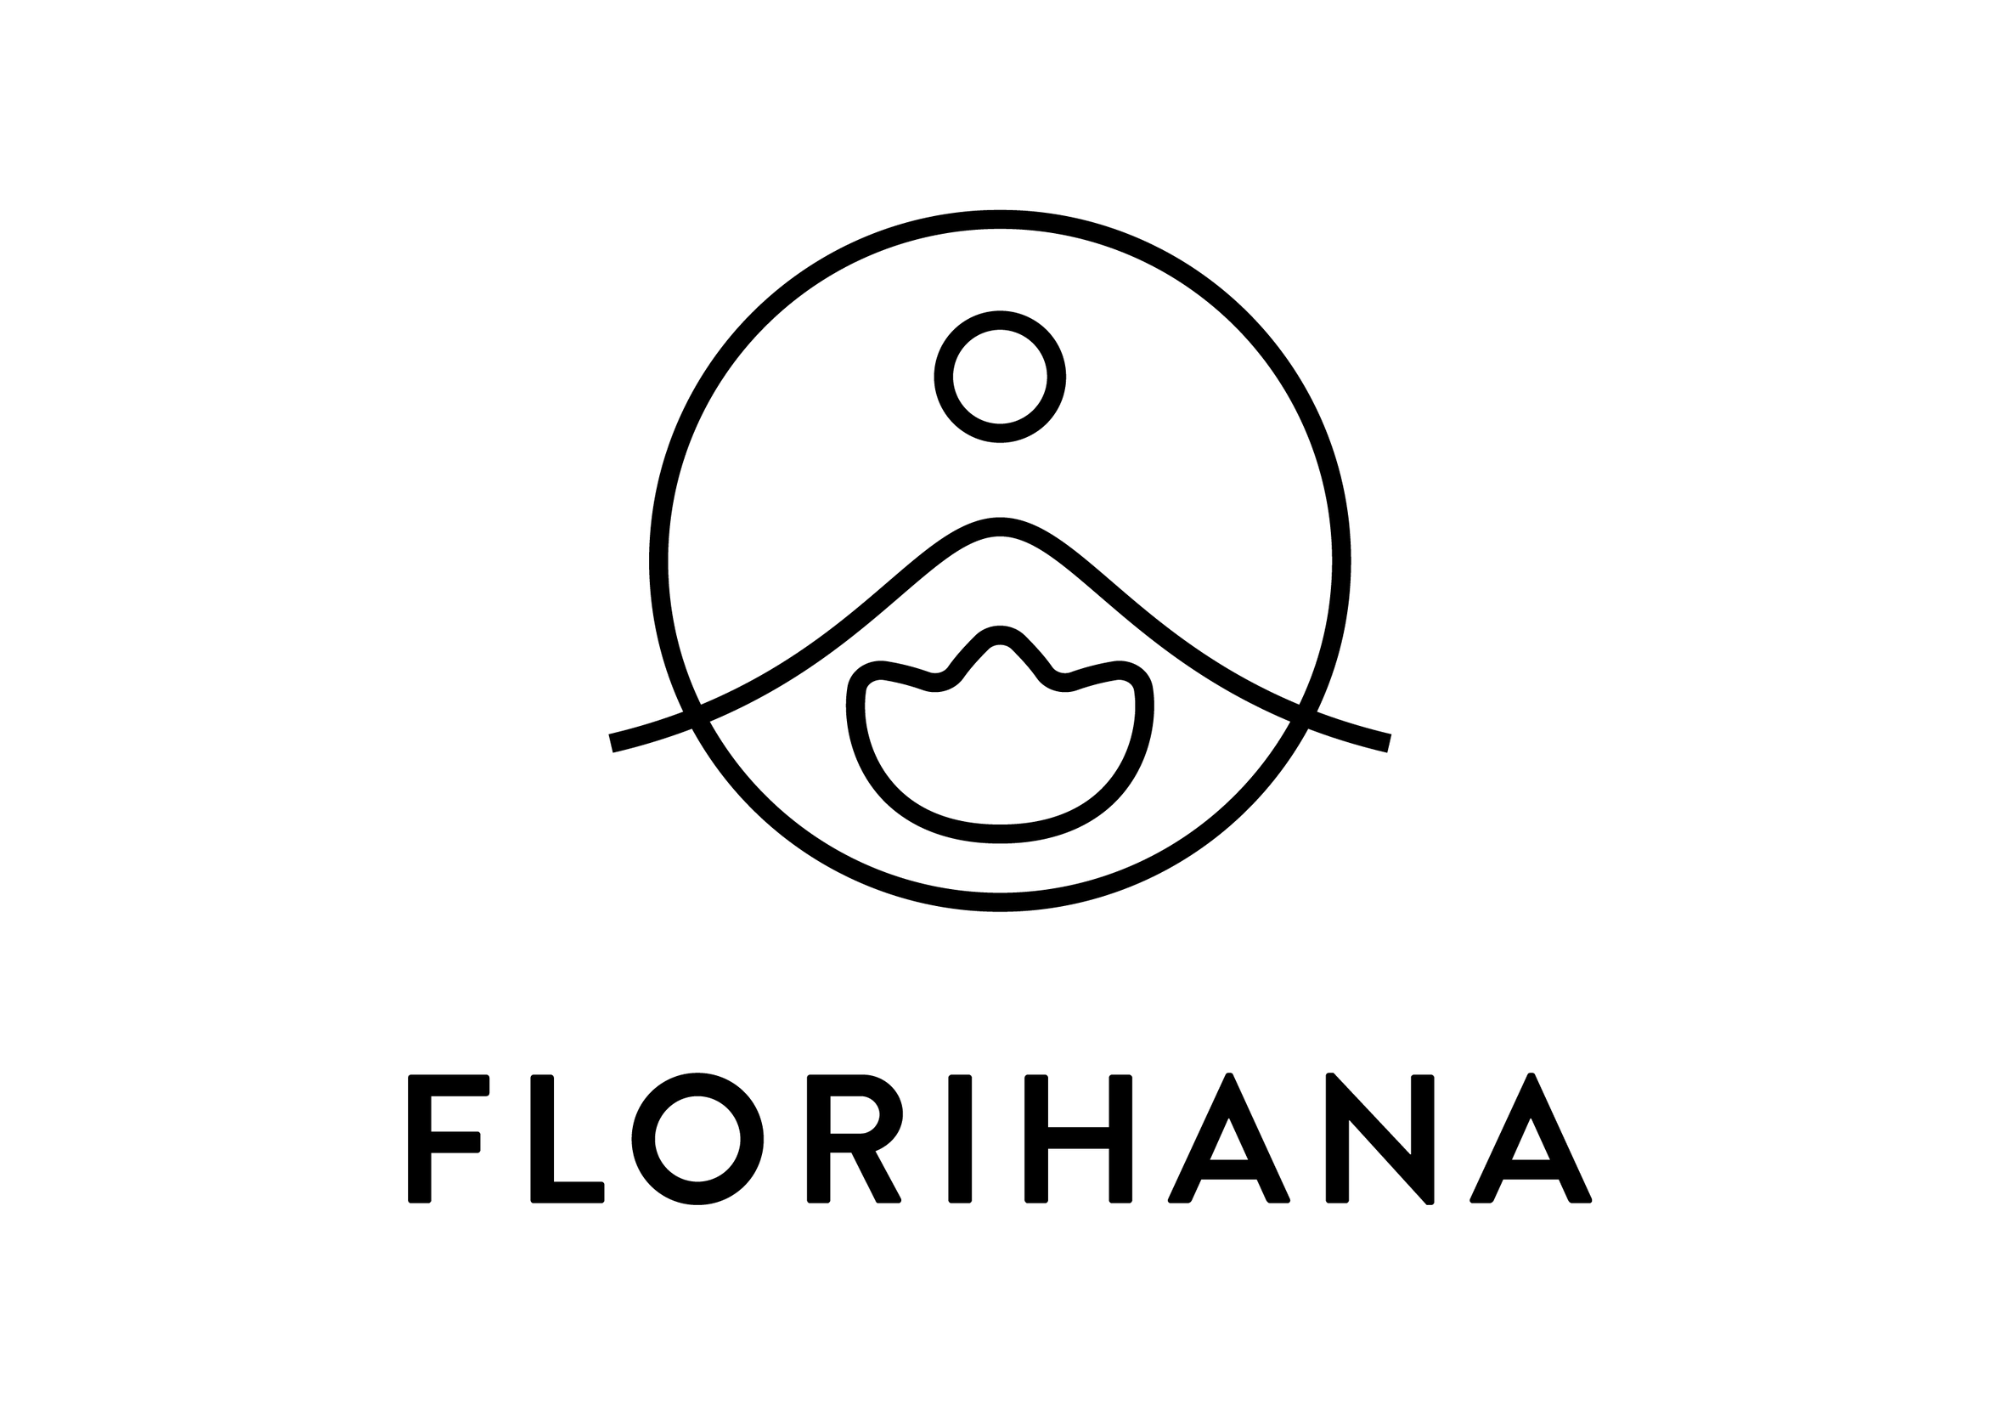 Florihana logo